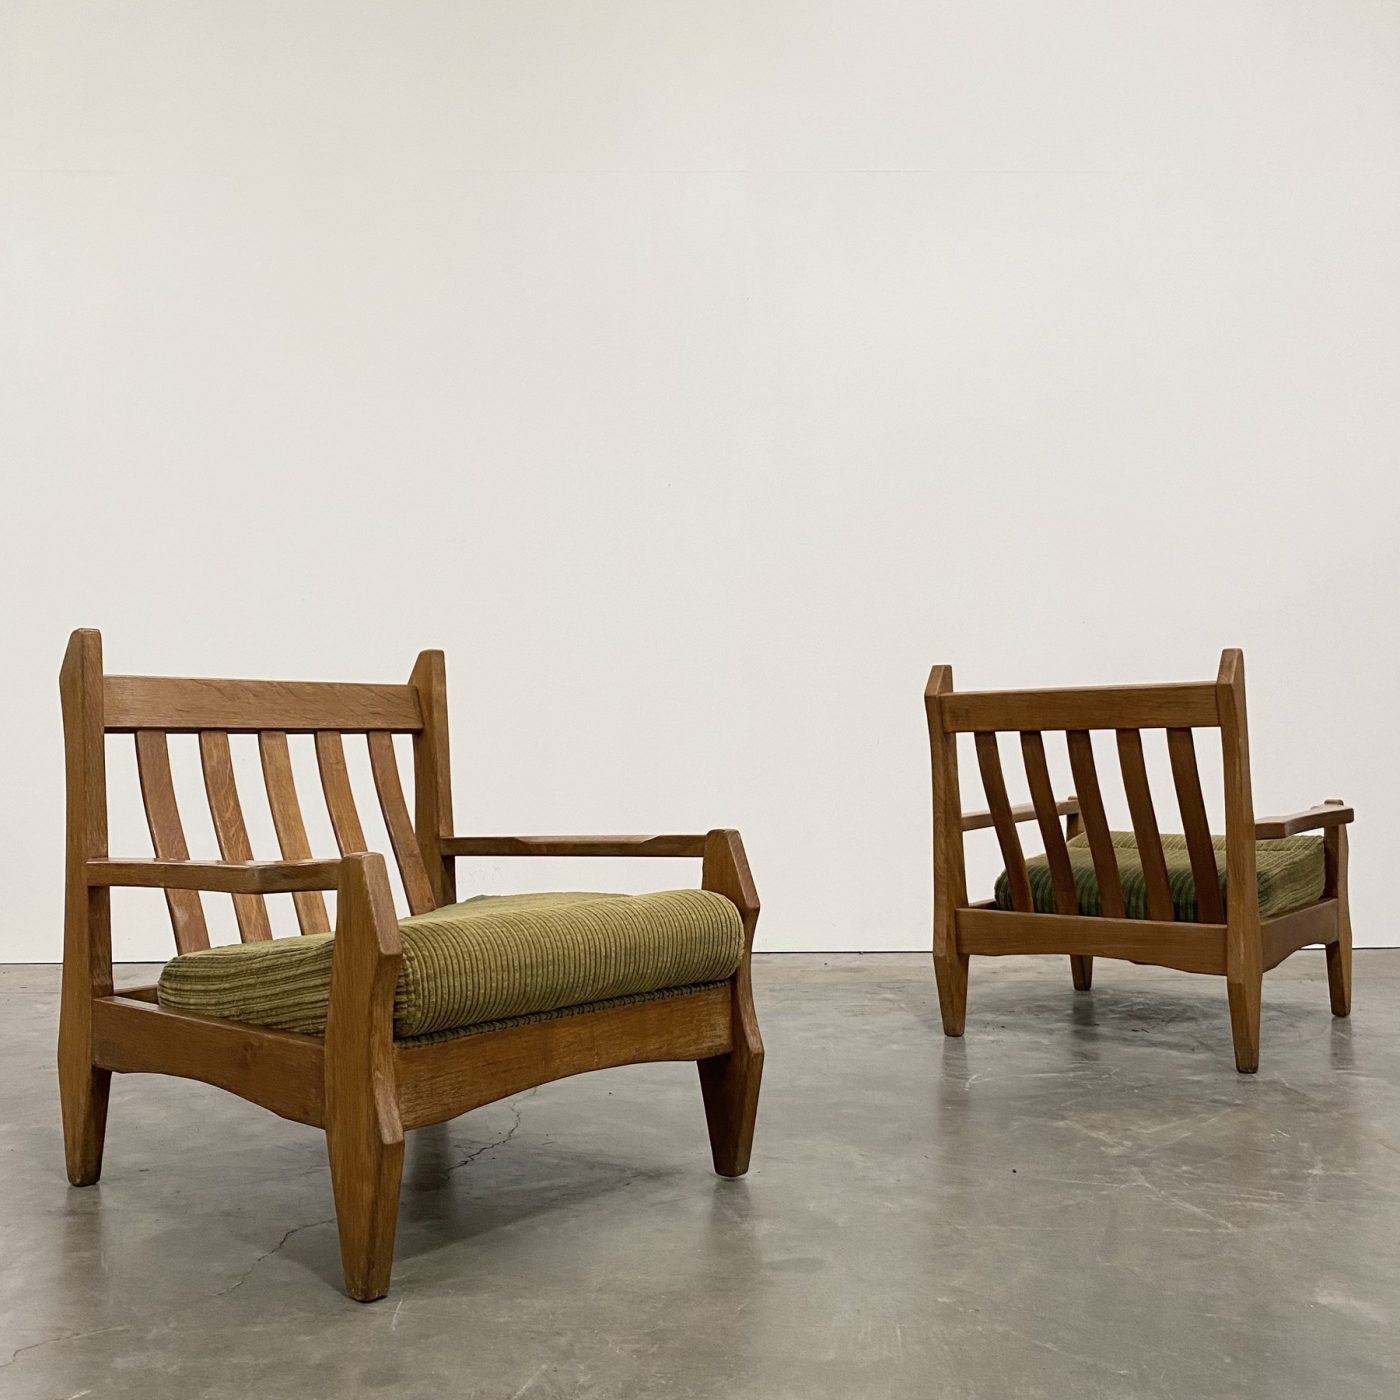 objet-vagabond-oak-armchairs0008